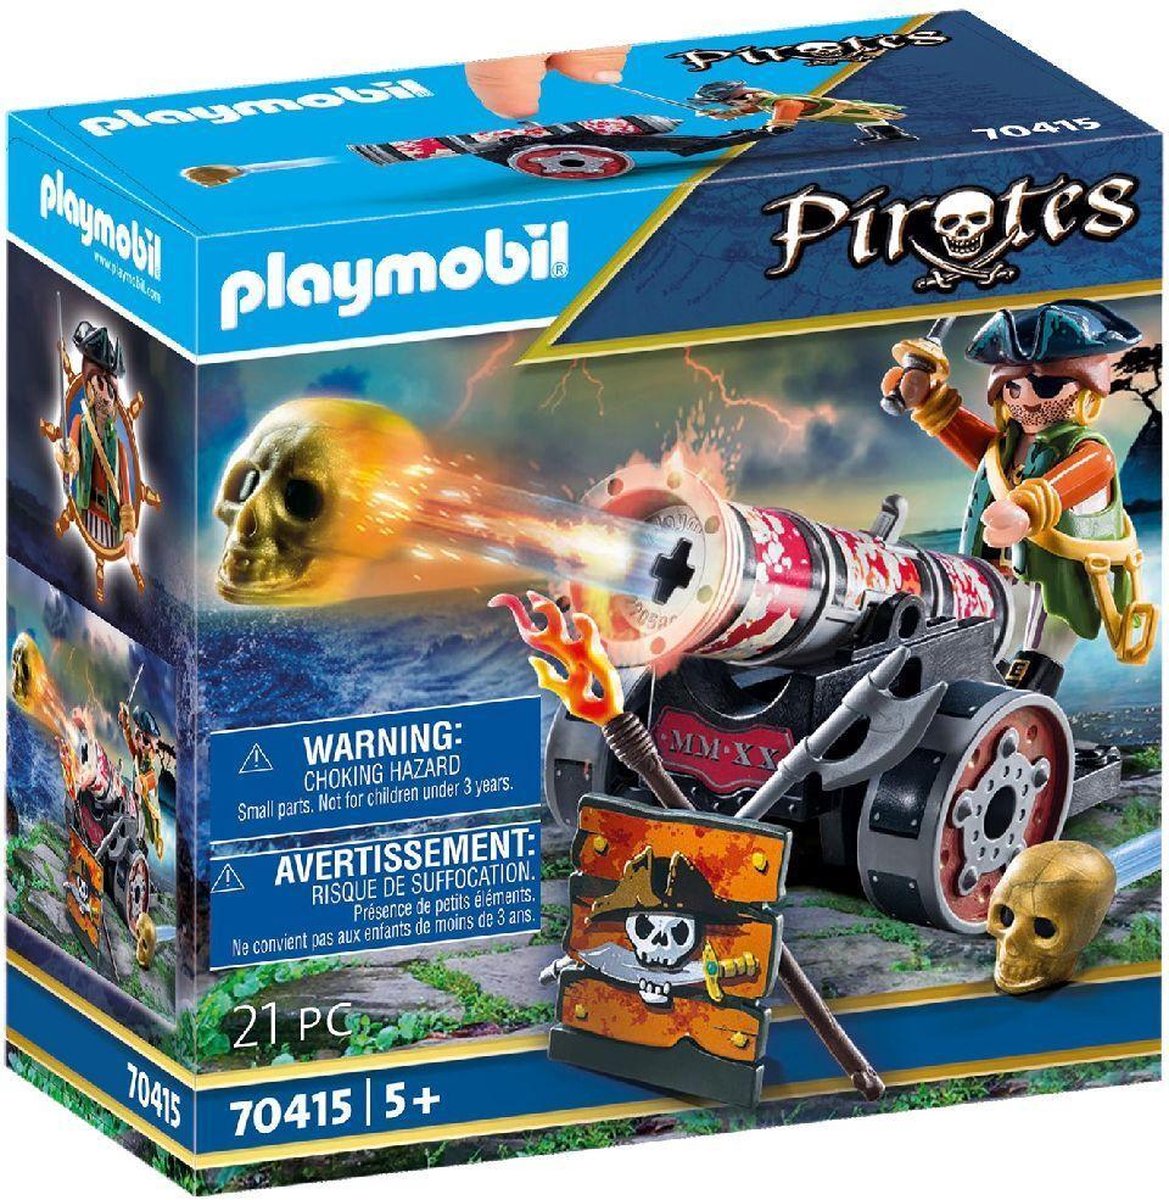 Playmobil Pirates: Piraat met kanon (70415)